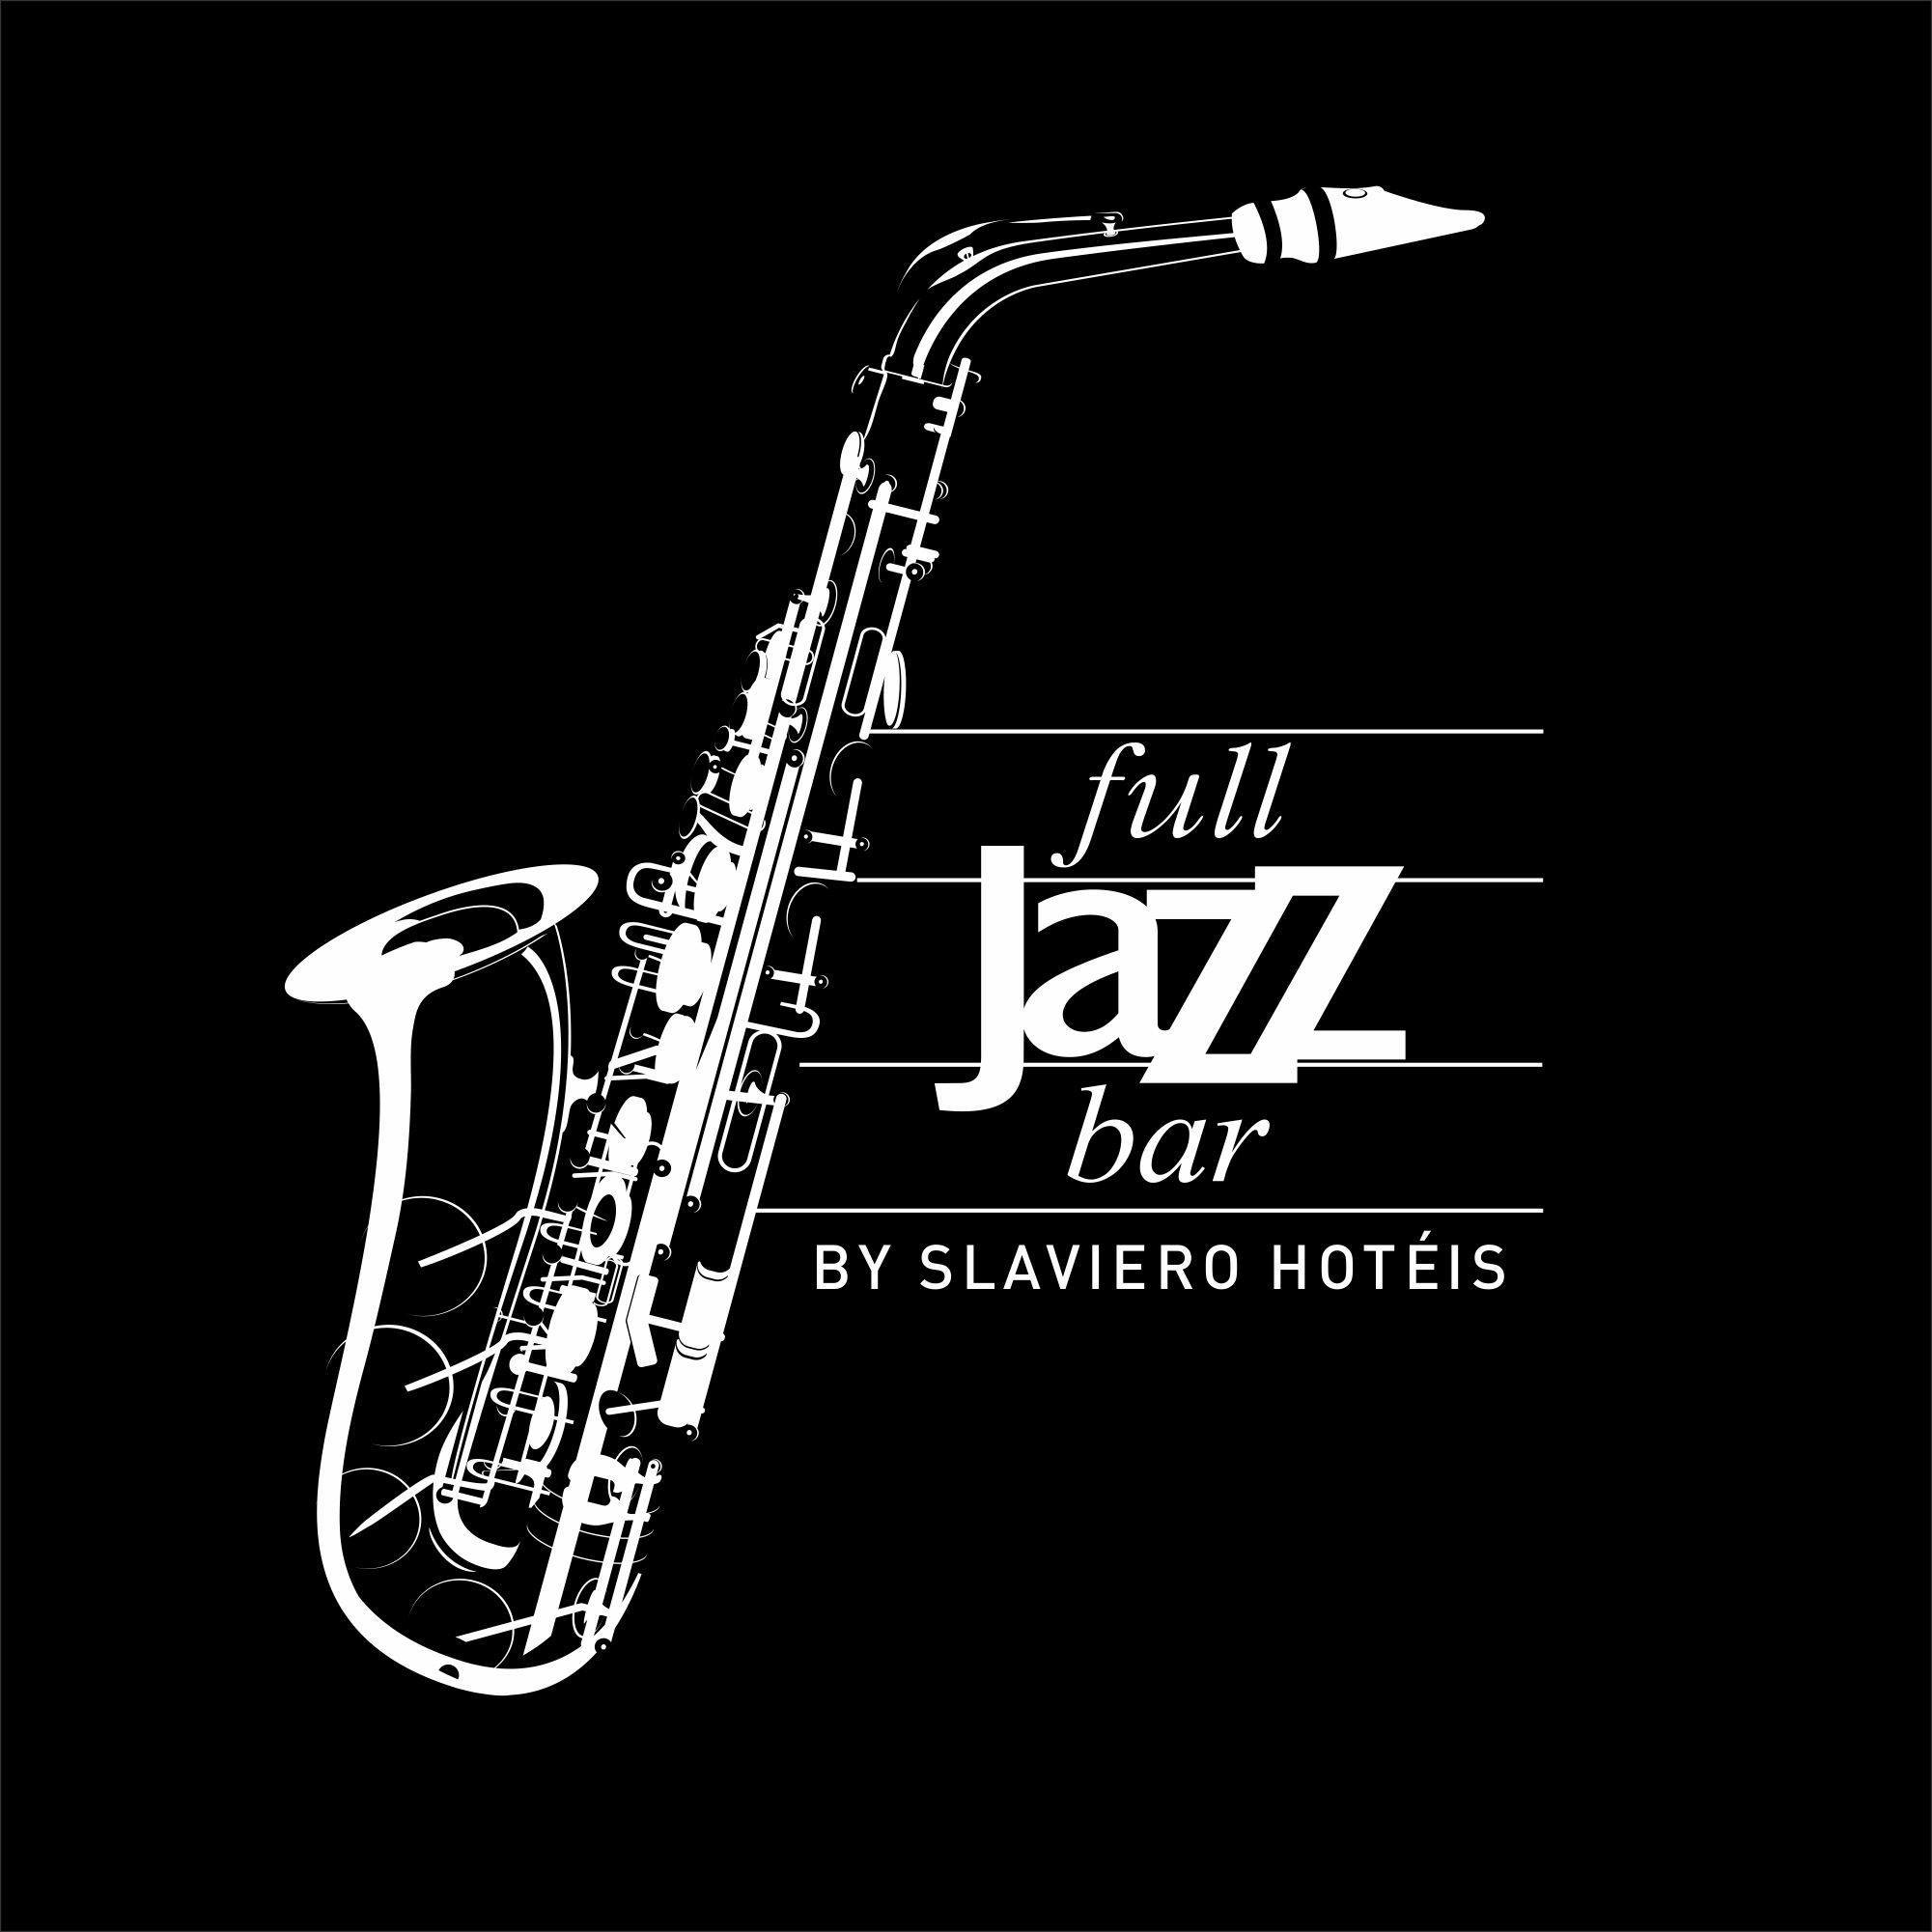 Hotel Full Jazz by Slaviero